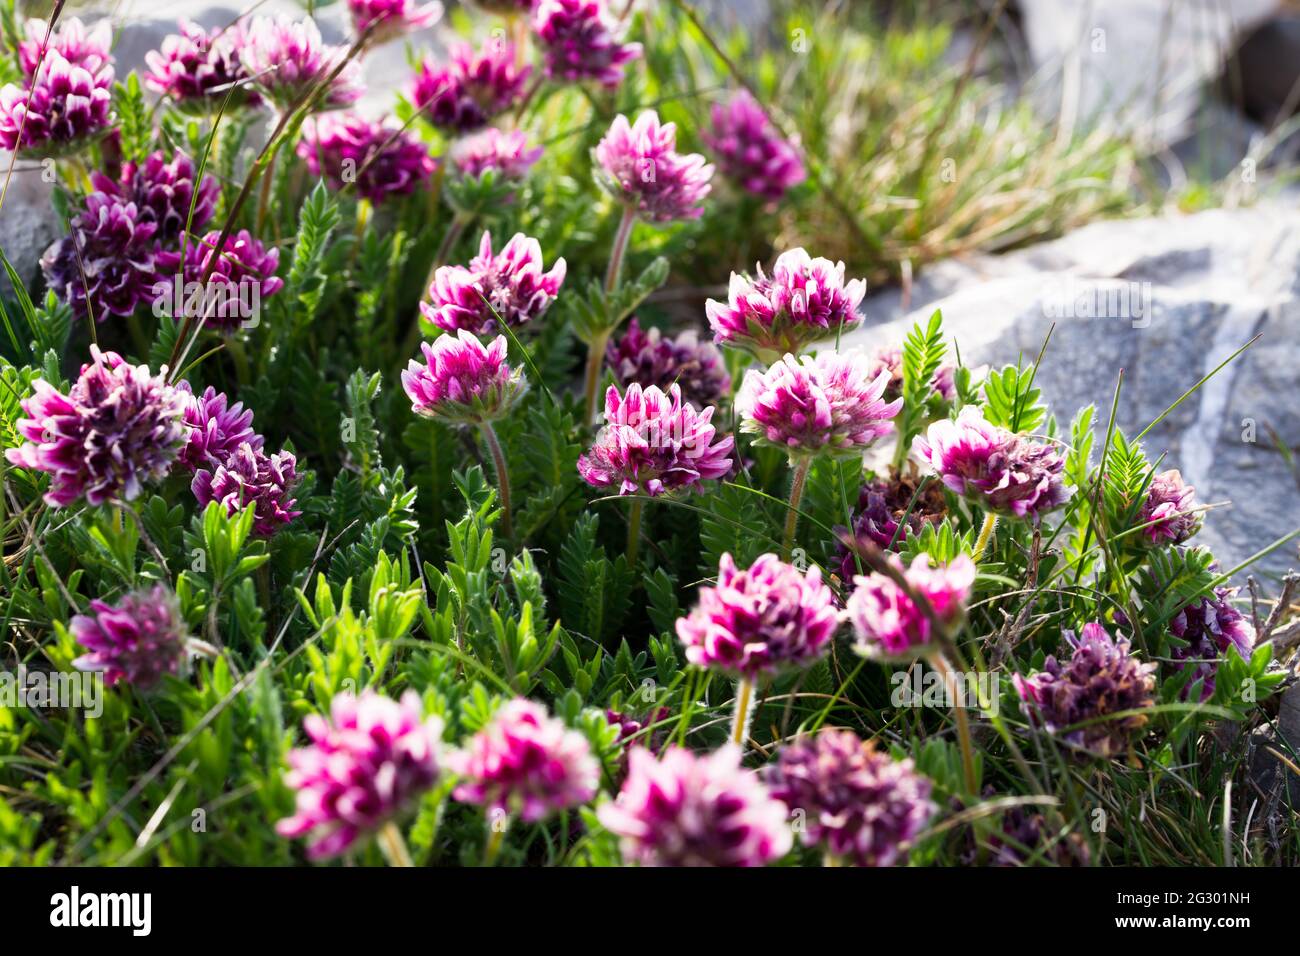 Anthyllis Montana Rubra, mountain kidney vetch 'Rubra' Flowers blooming during springtime Stock Photo